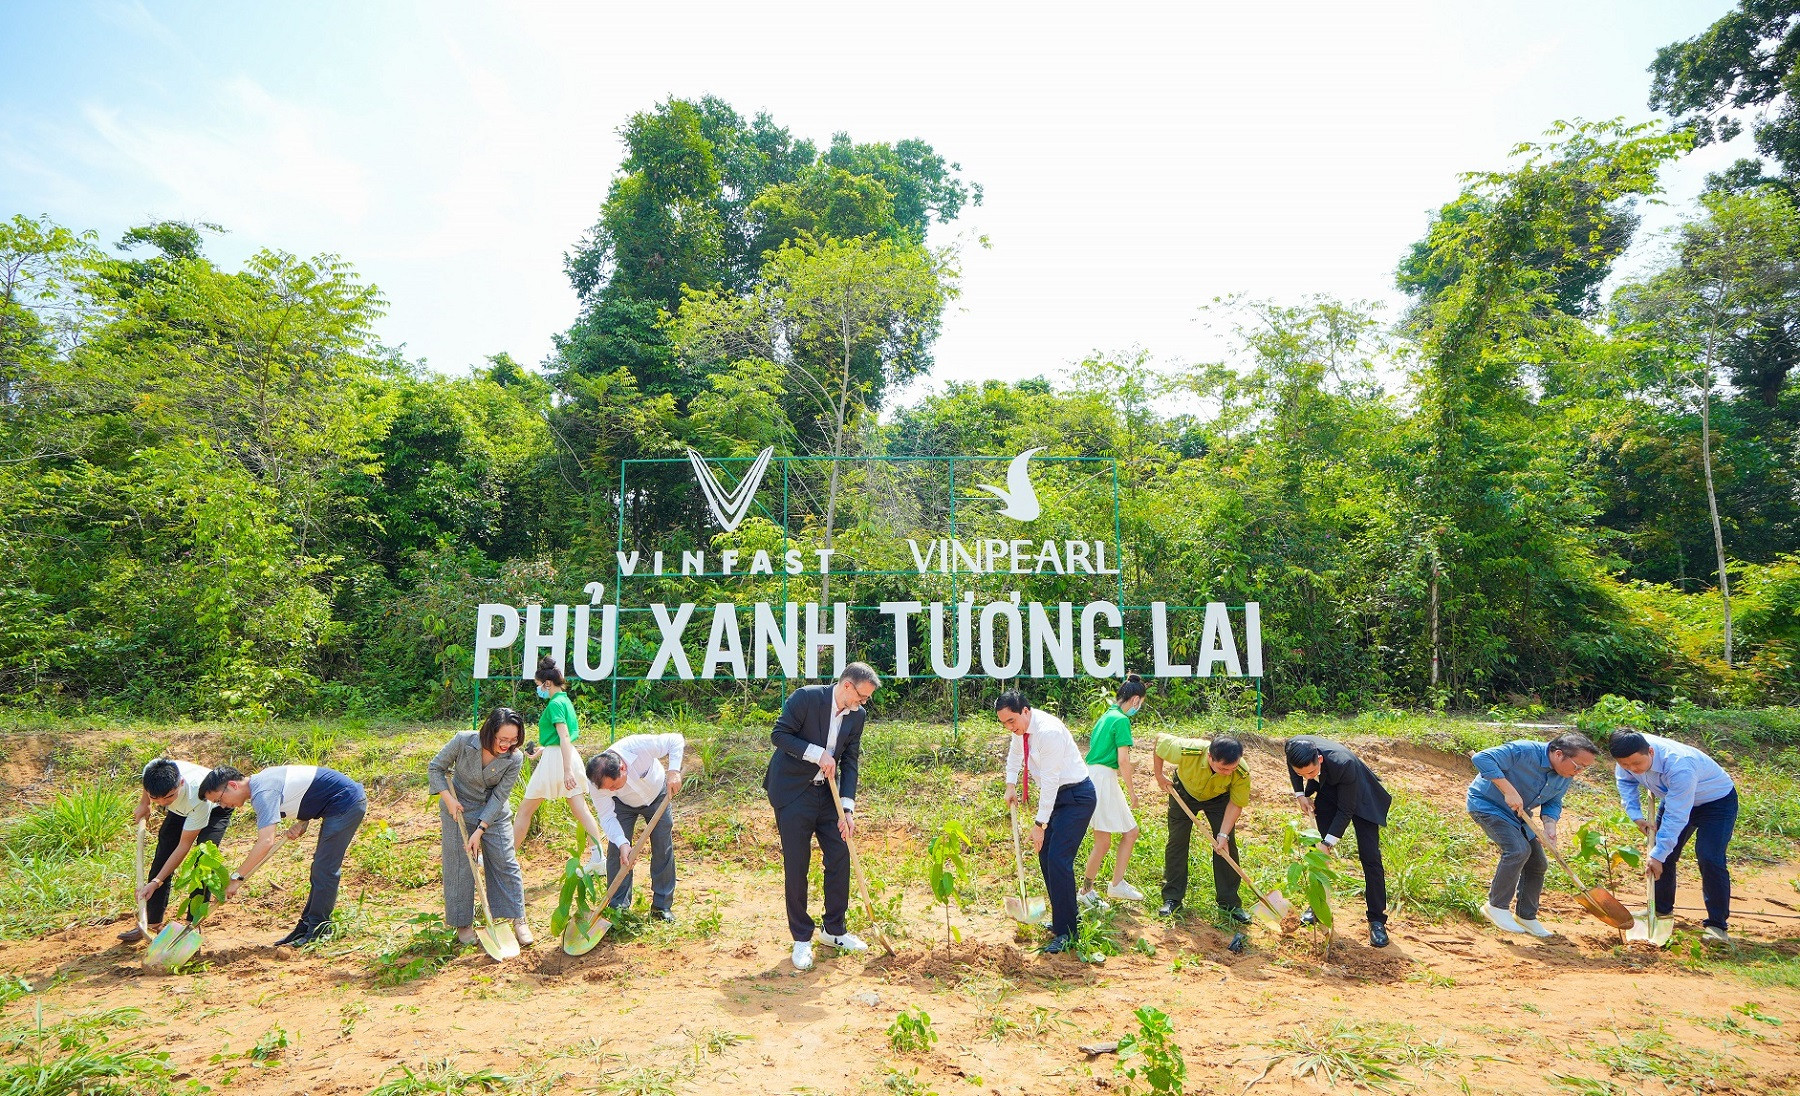 VinFast khởi động dự án trồng rừng “Phủ xanh Tương lai” - Ảnh 2.